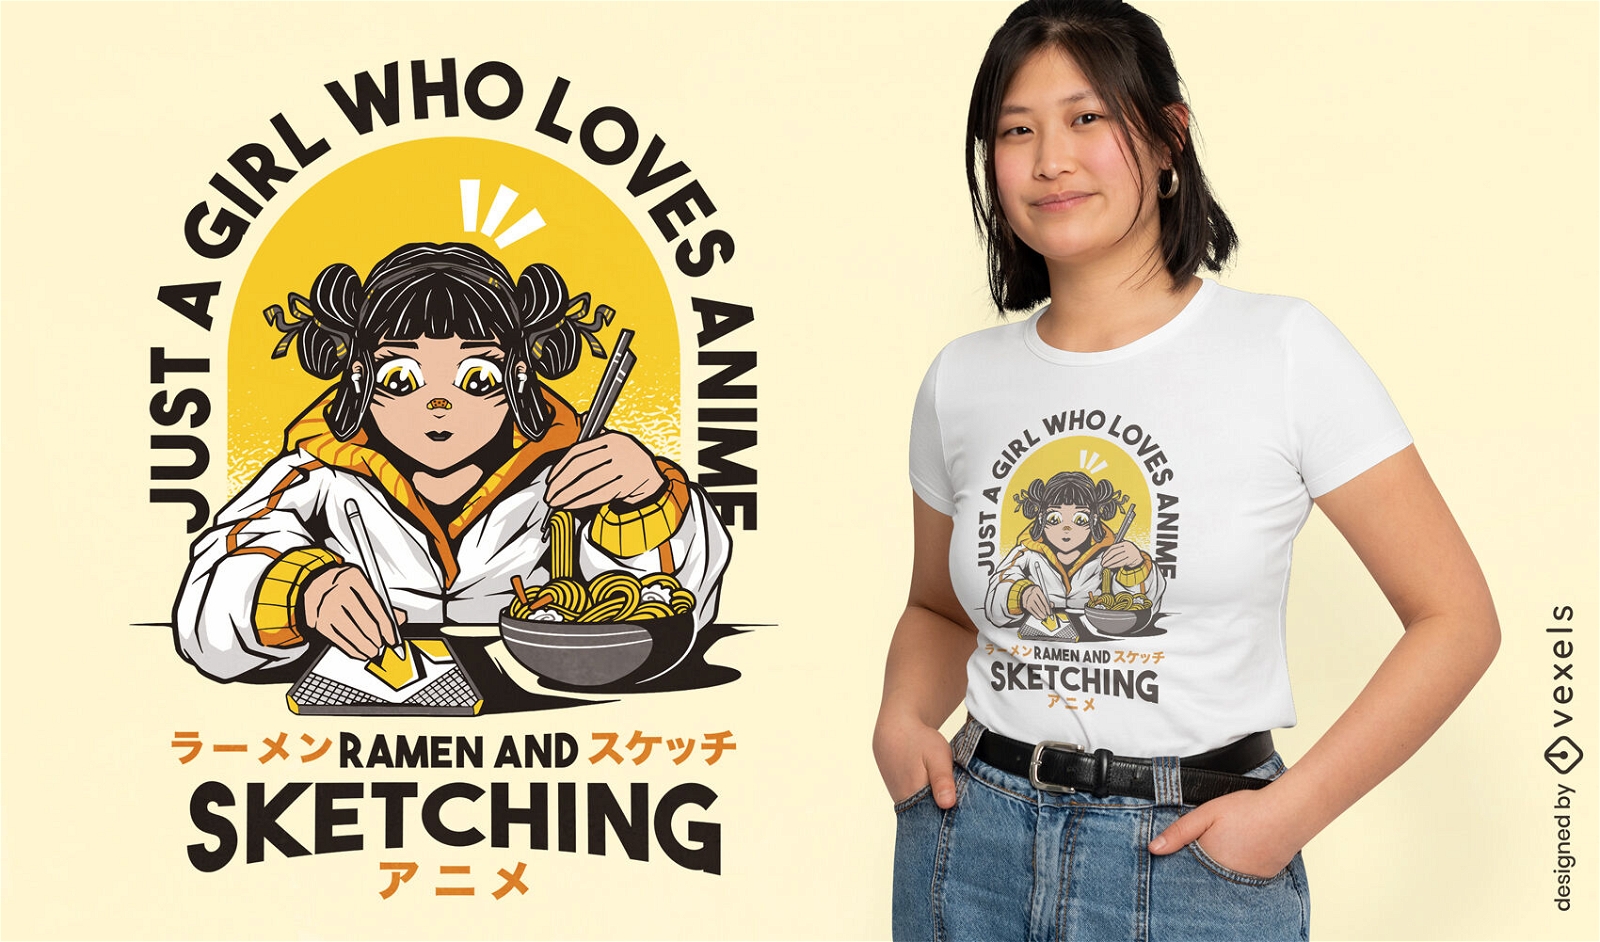 Artist anime and ramen lover t-shirt design